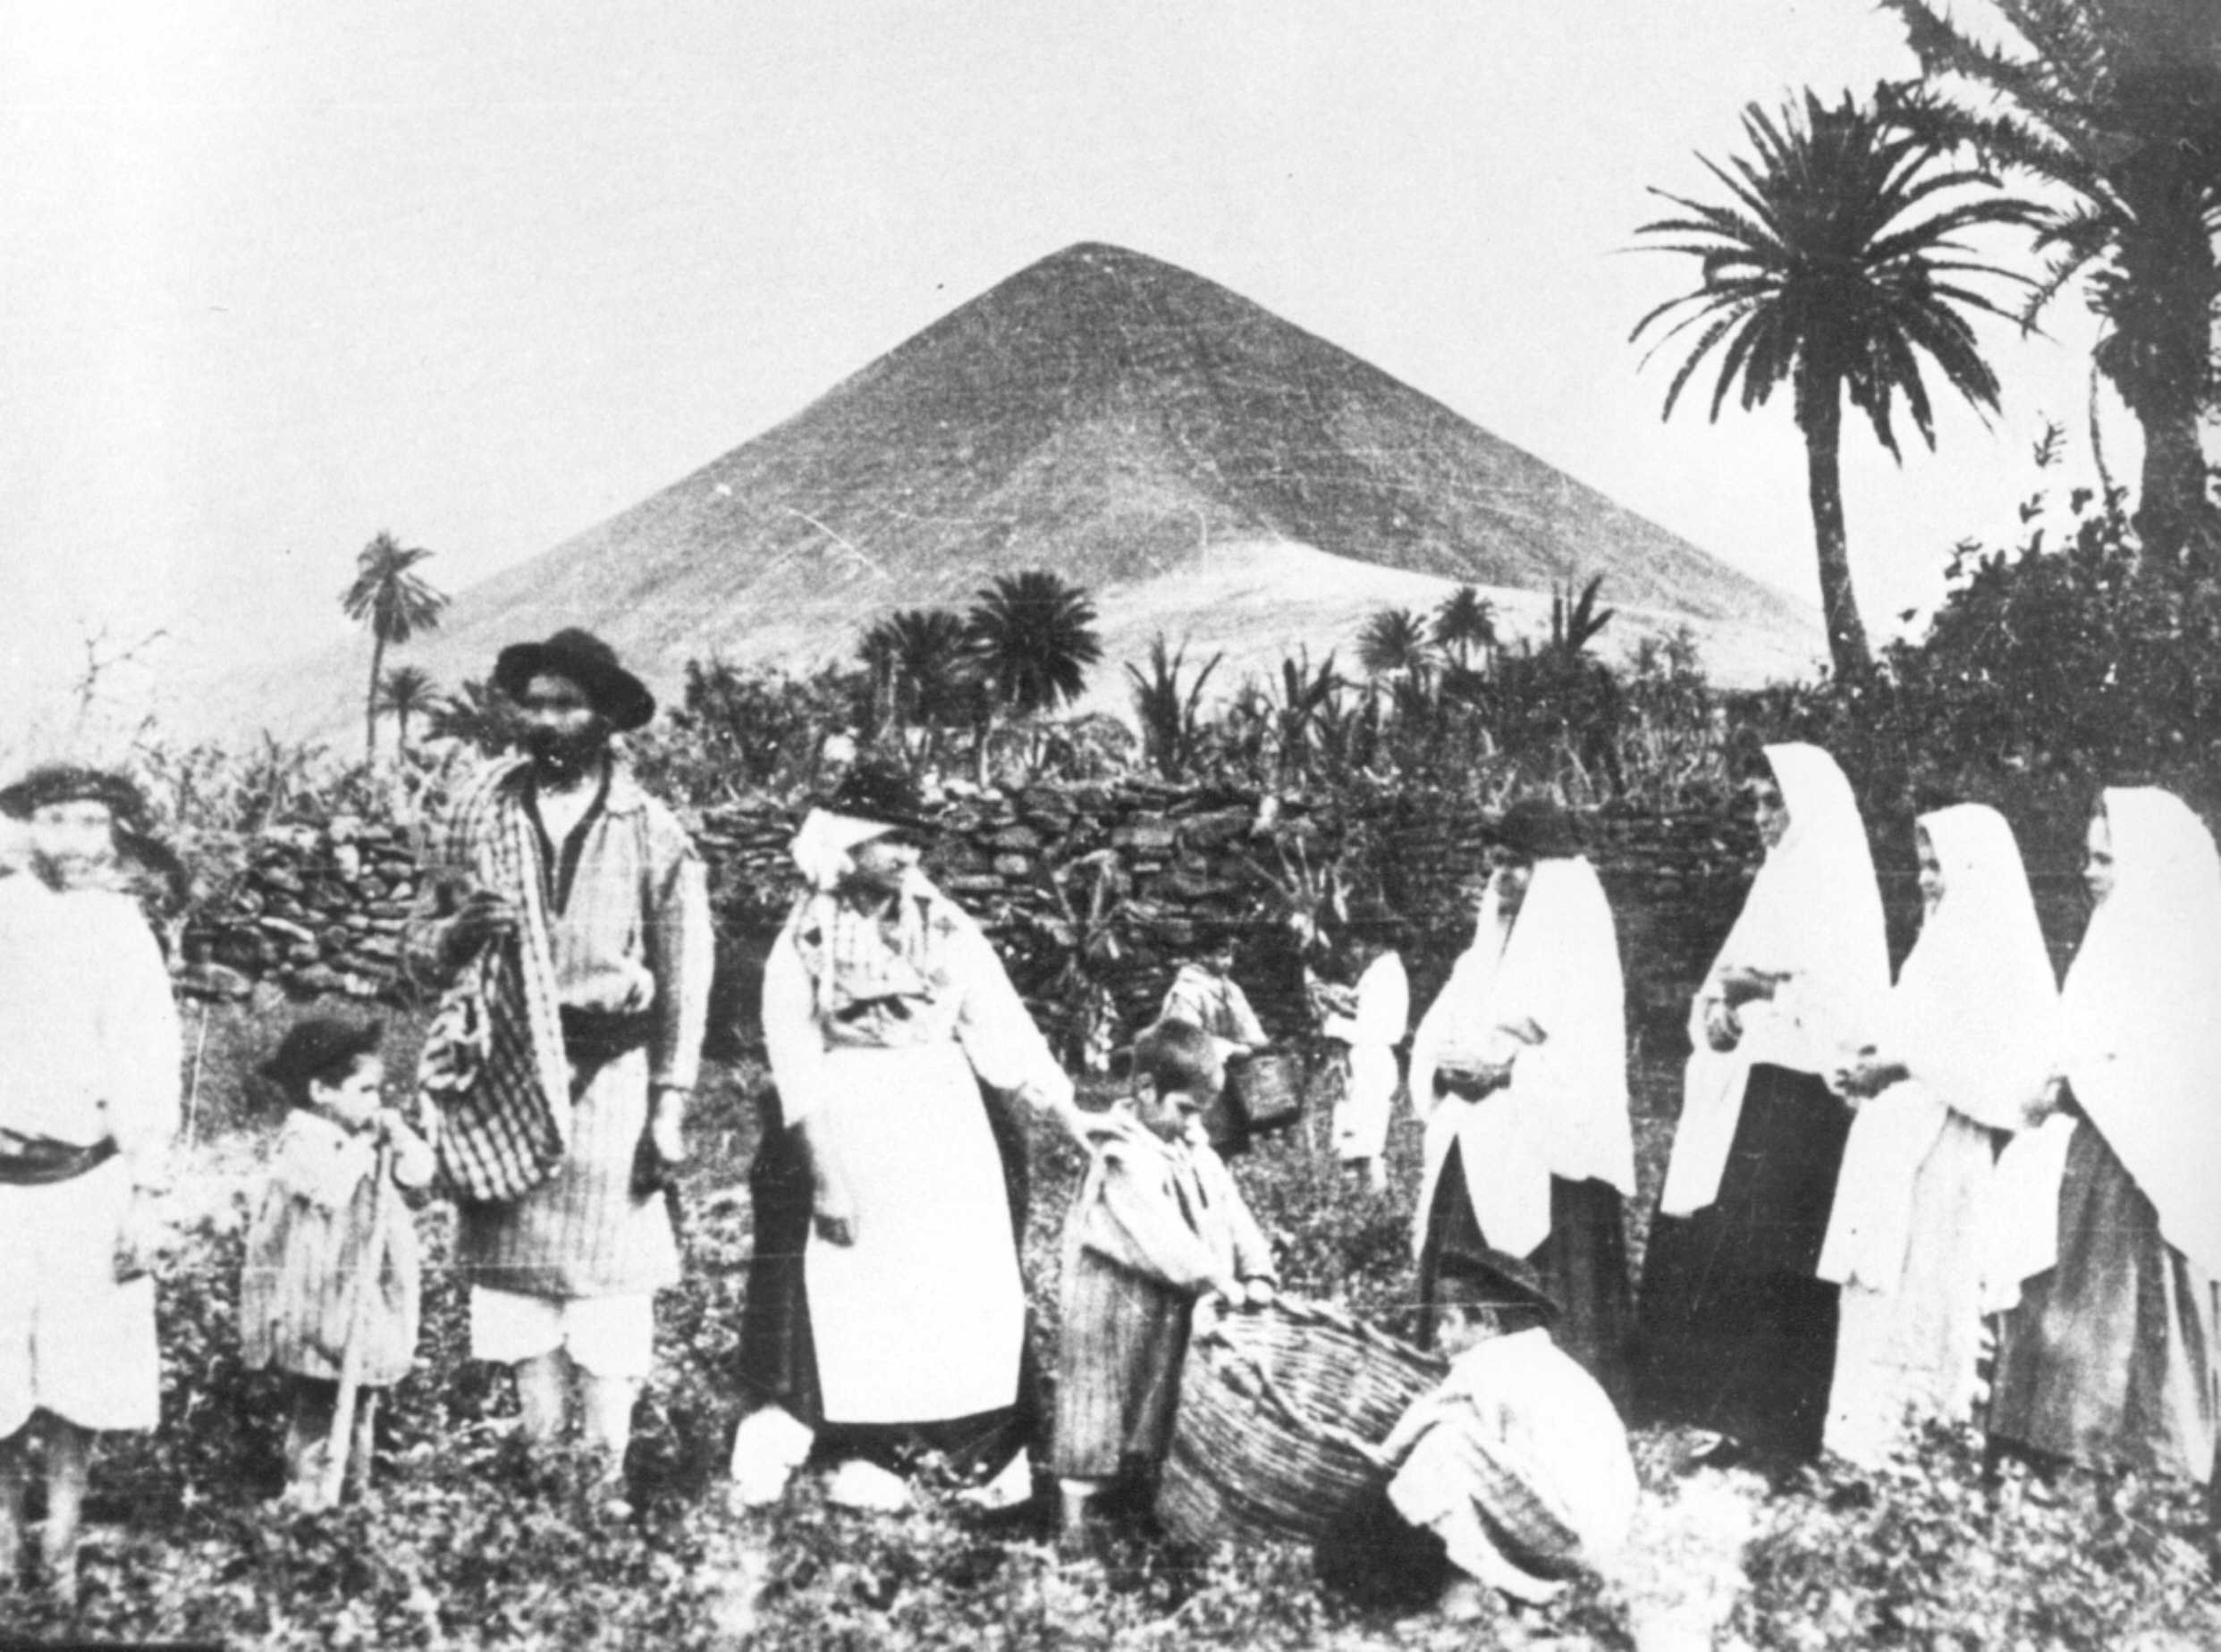 Campesinos de La Vega típicamente vestidos con La Montaña al fondo.
Foto de Luis Ojeda en 1900.